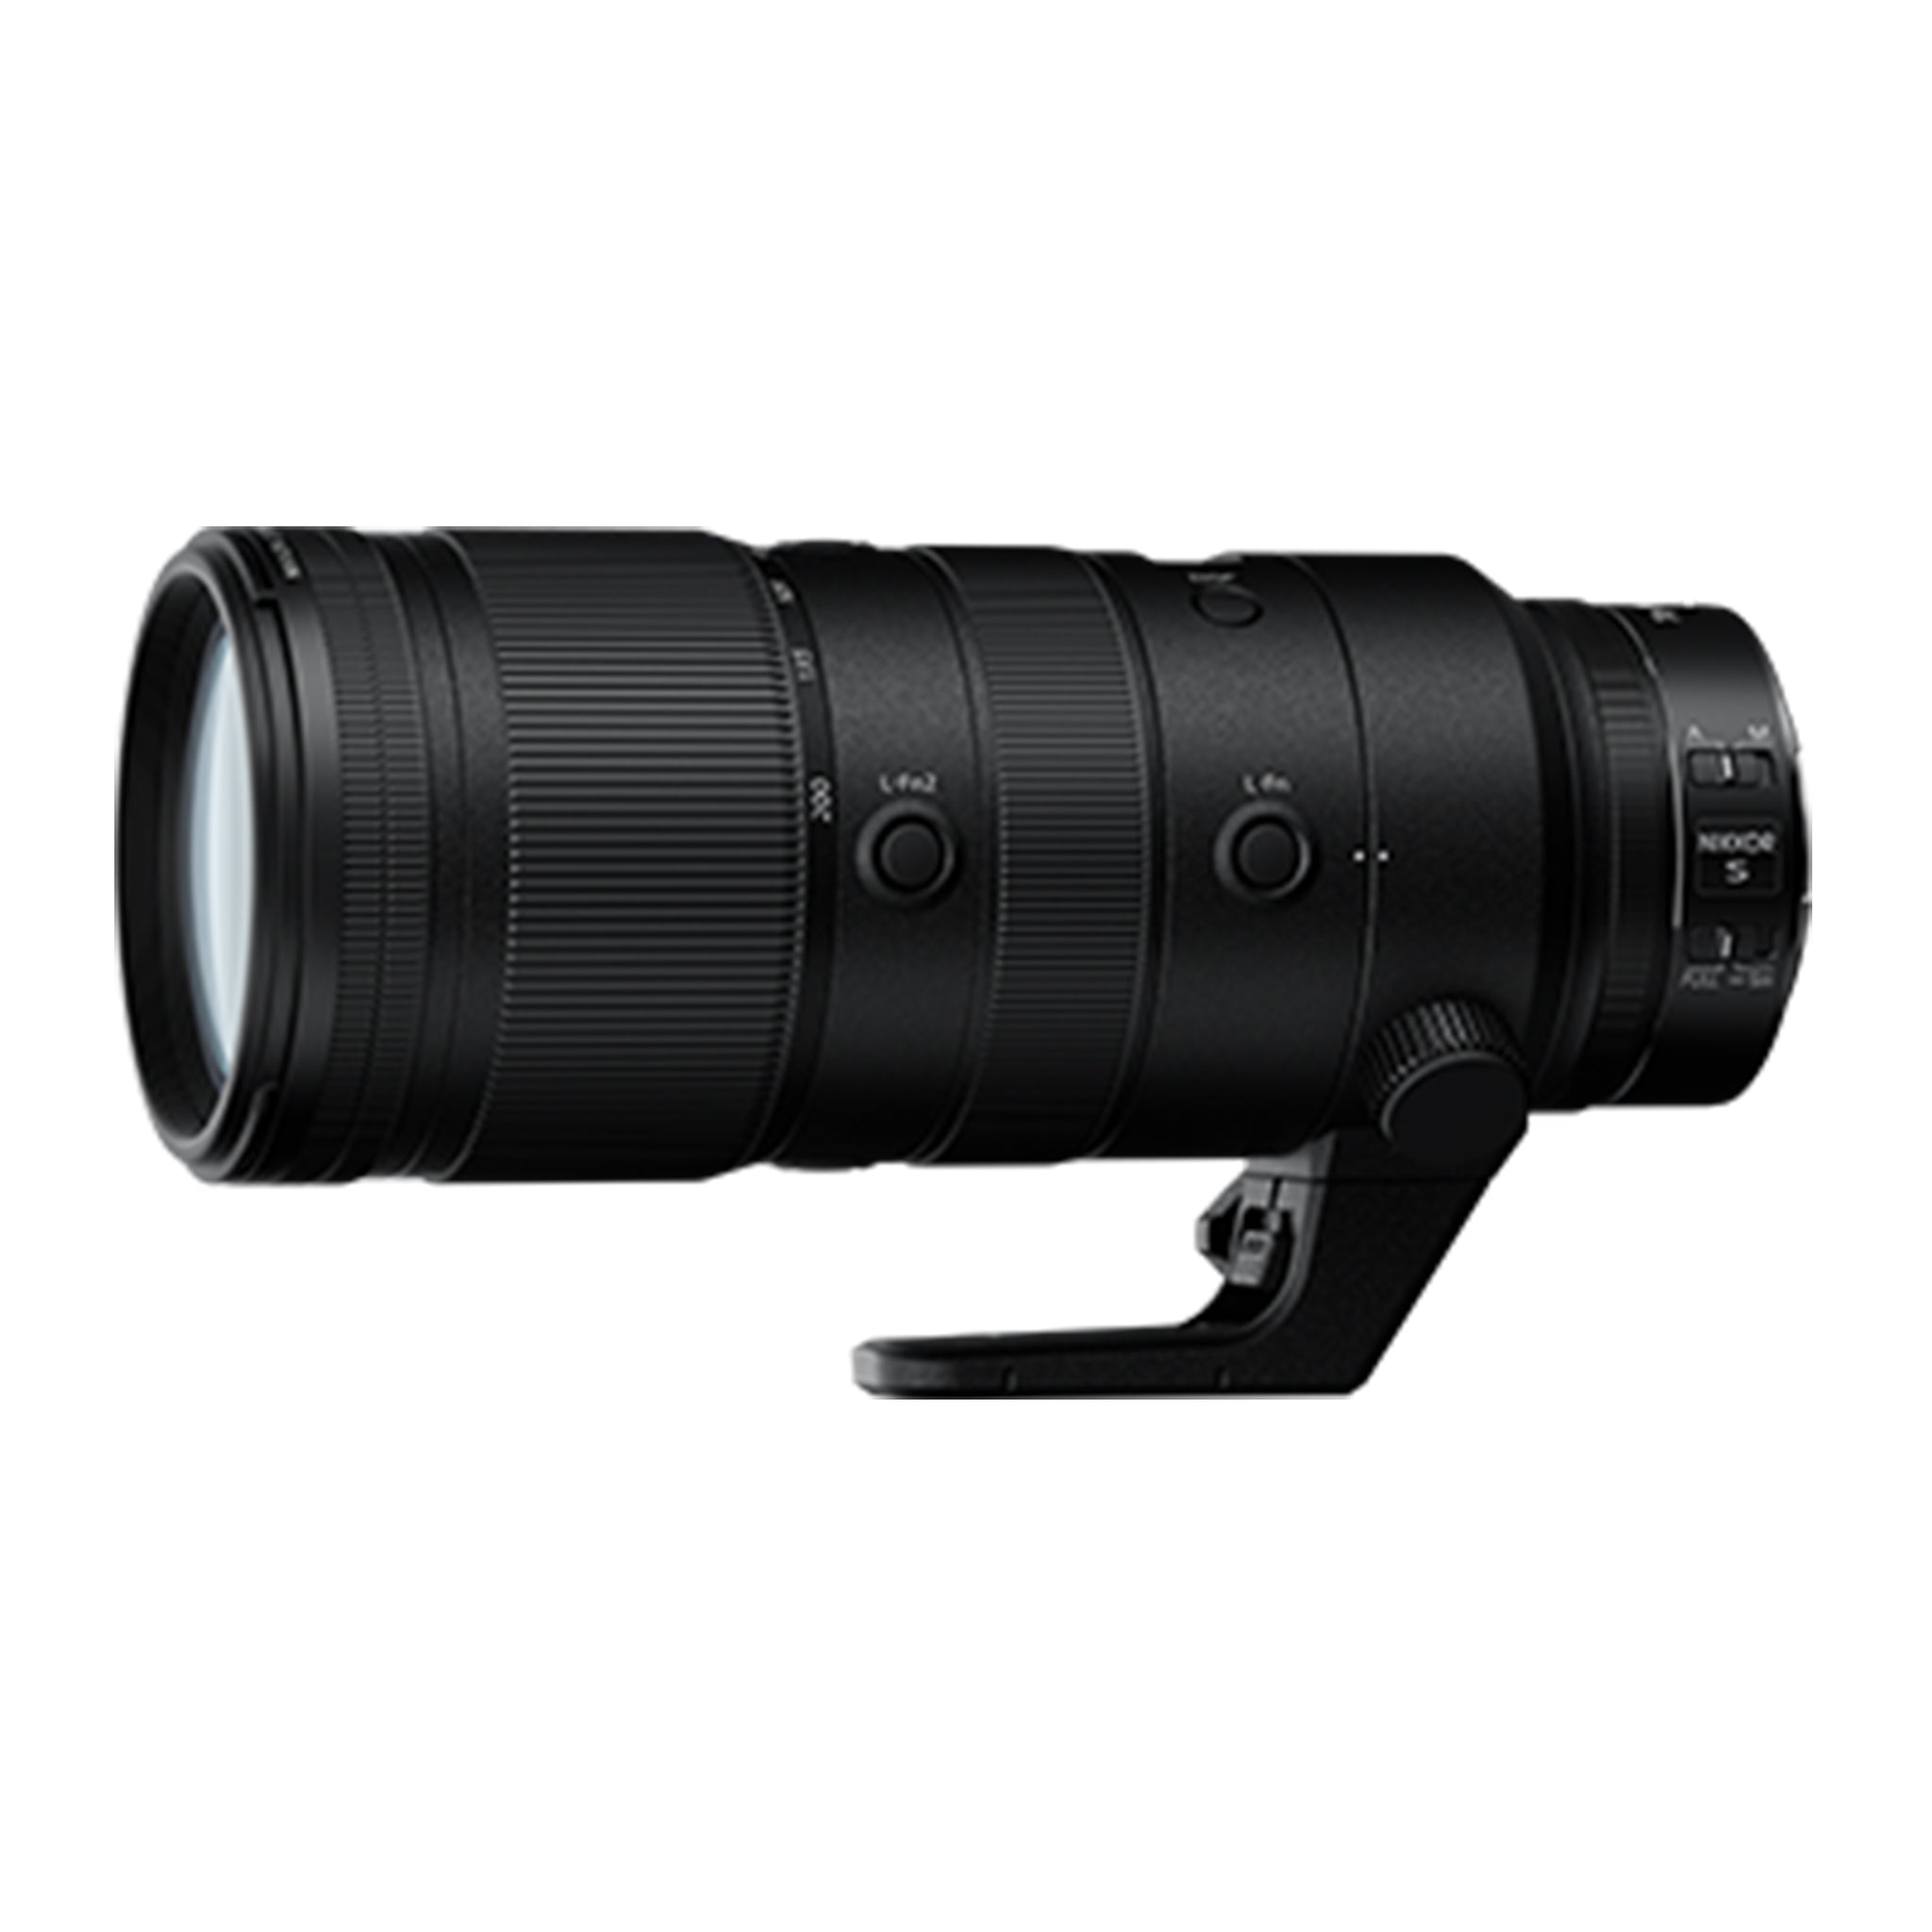 Nikon NIKKOR Z 70-200mm f/2.8 VR S Lens-Camera Lenses-futuromic